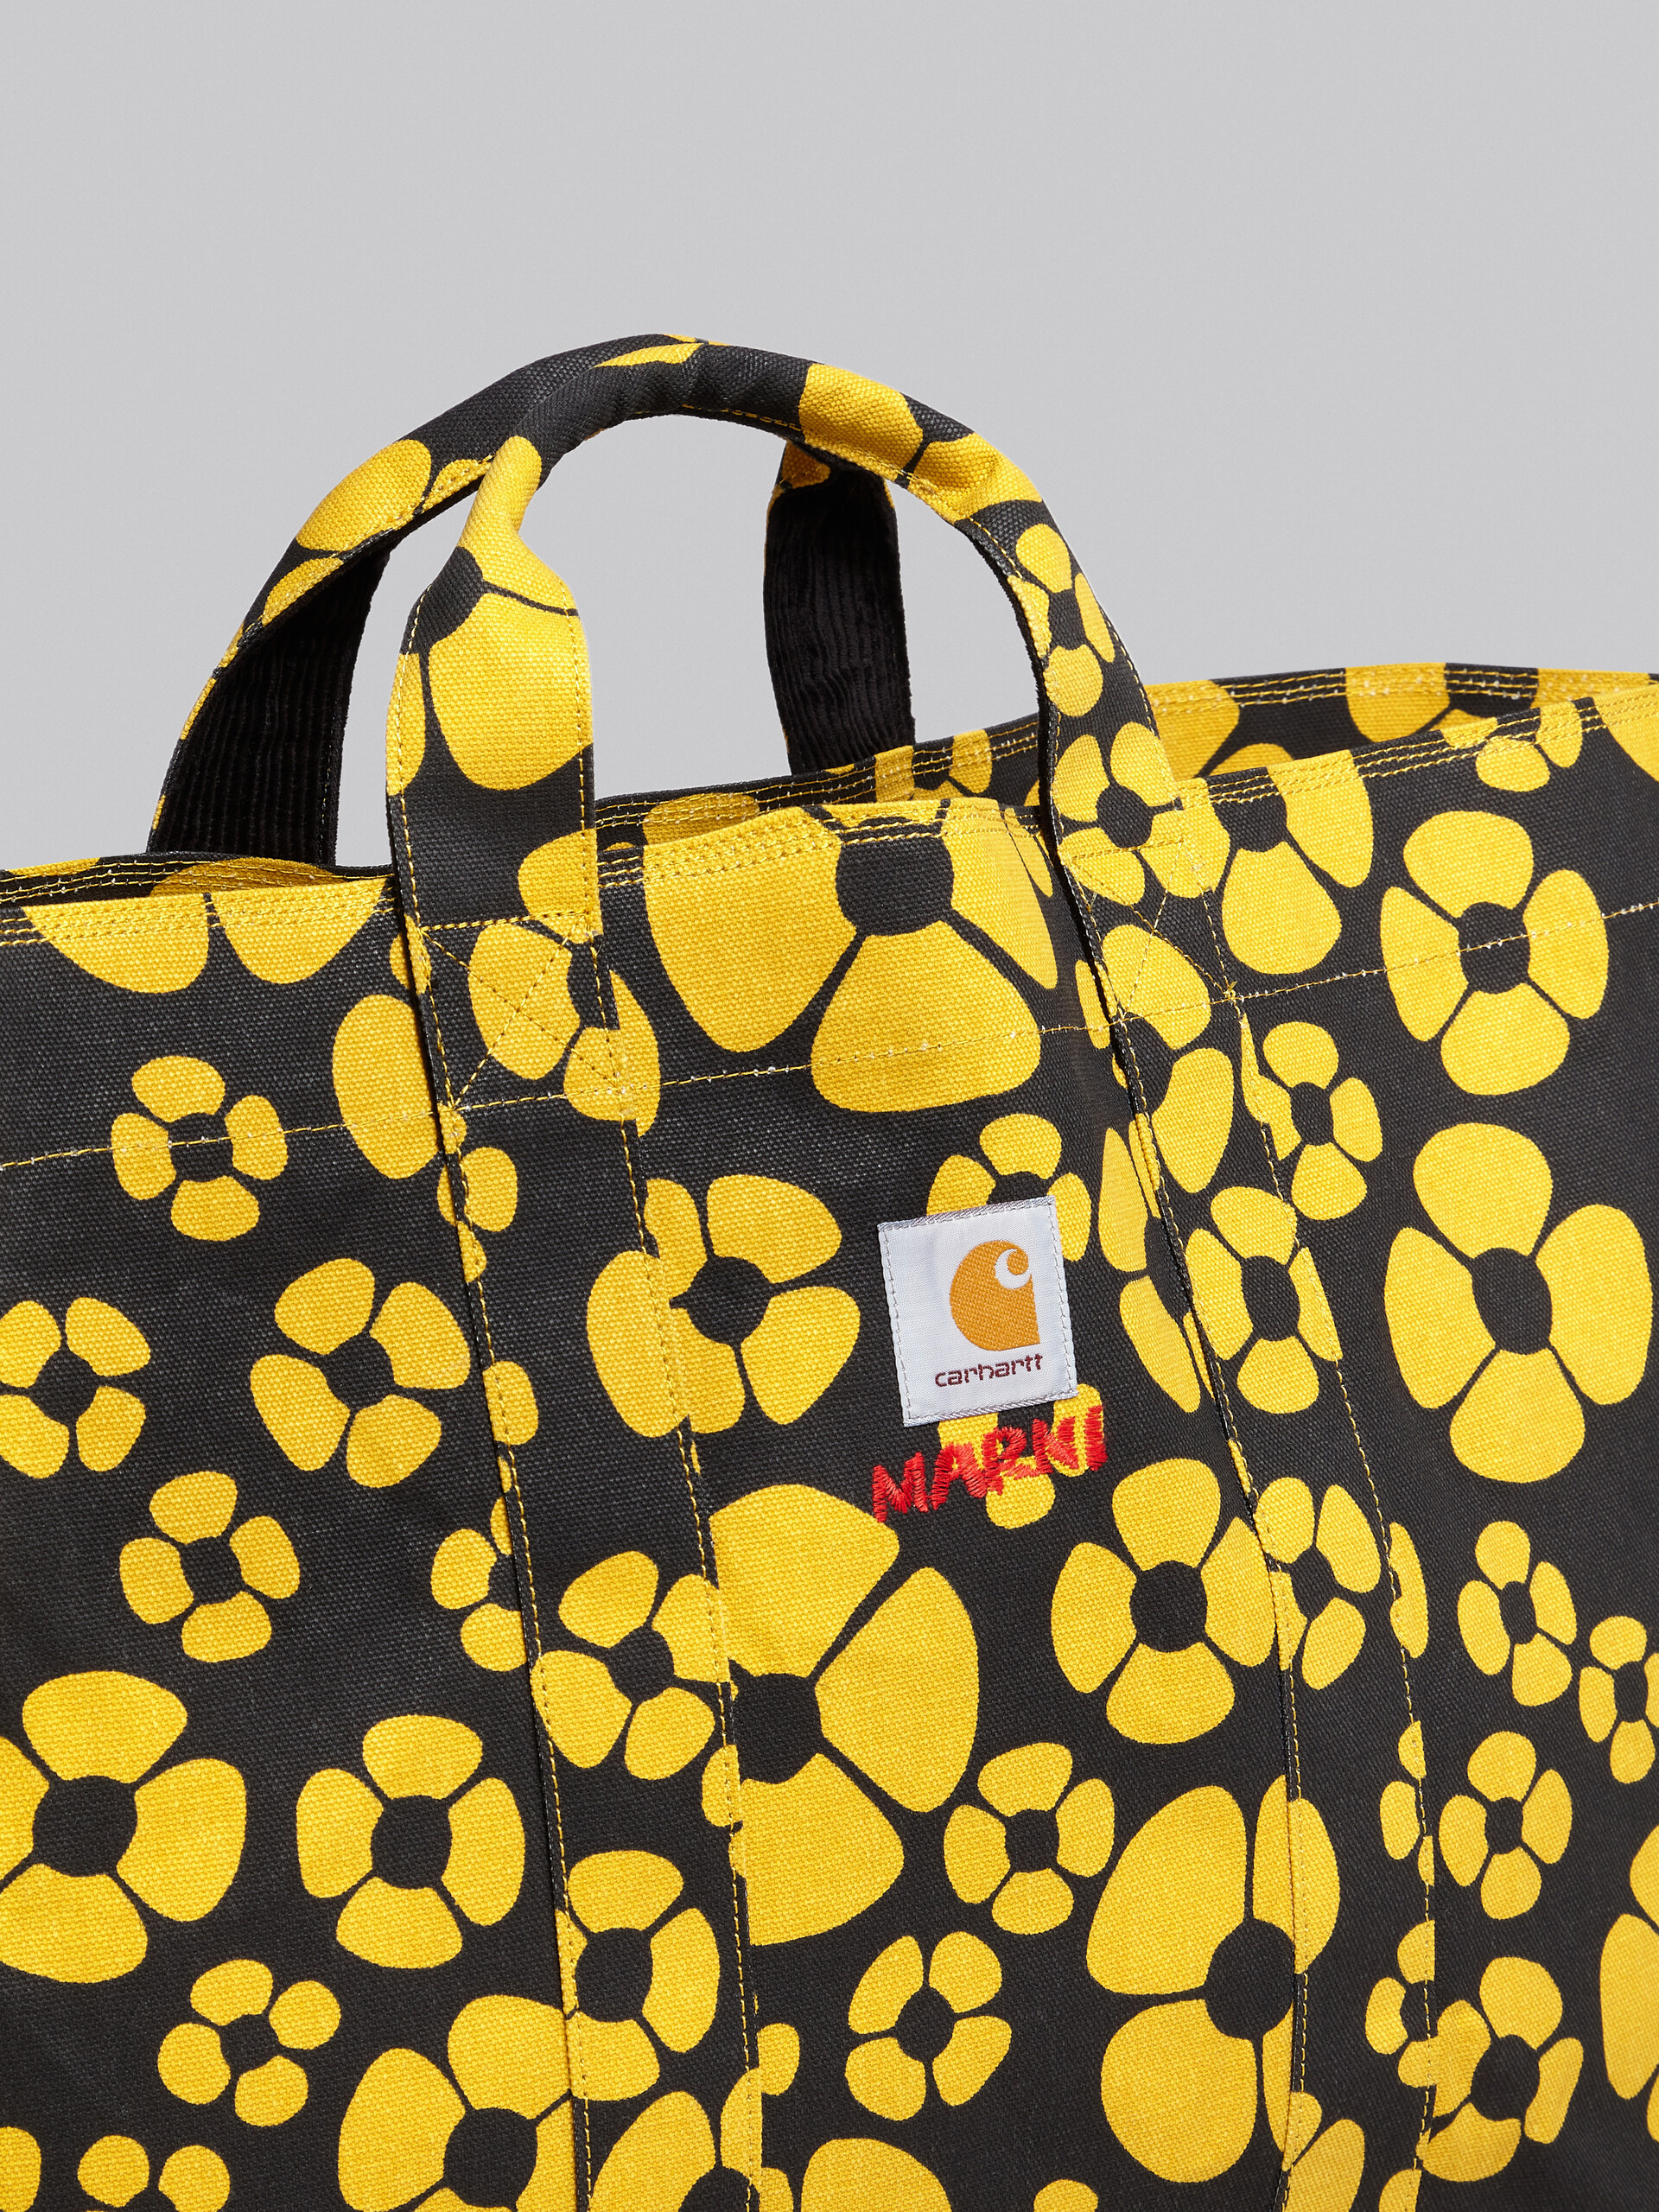 MARNI x CARHARTT WIP - yellow shopper - Shopping Bags - Image 5